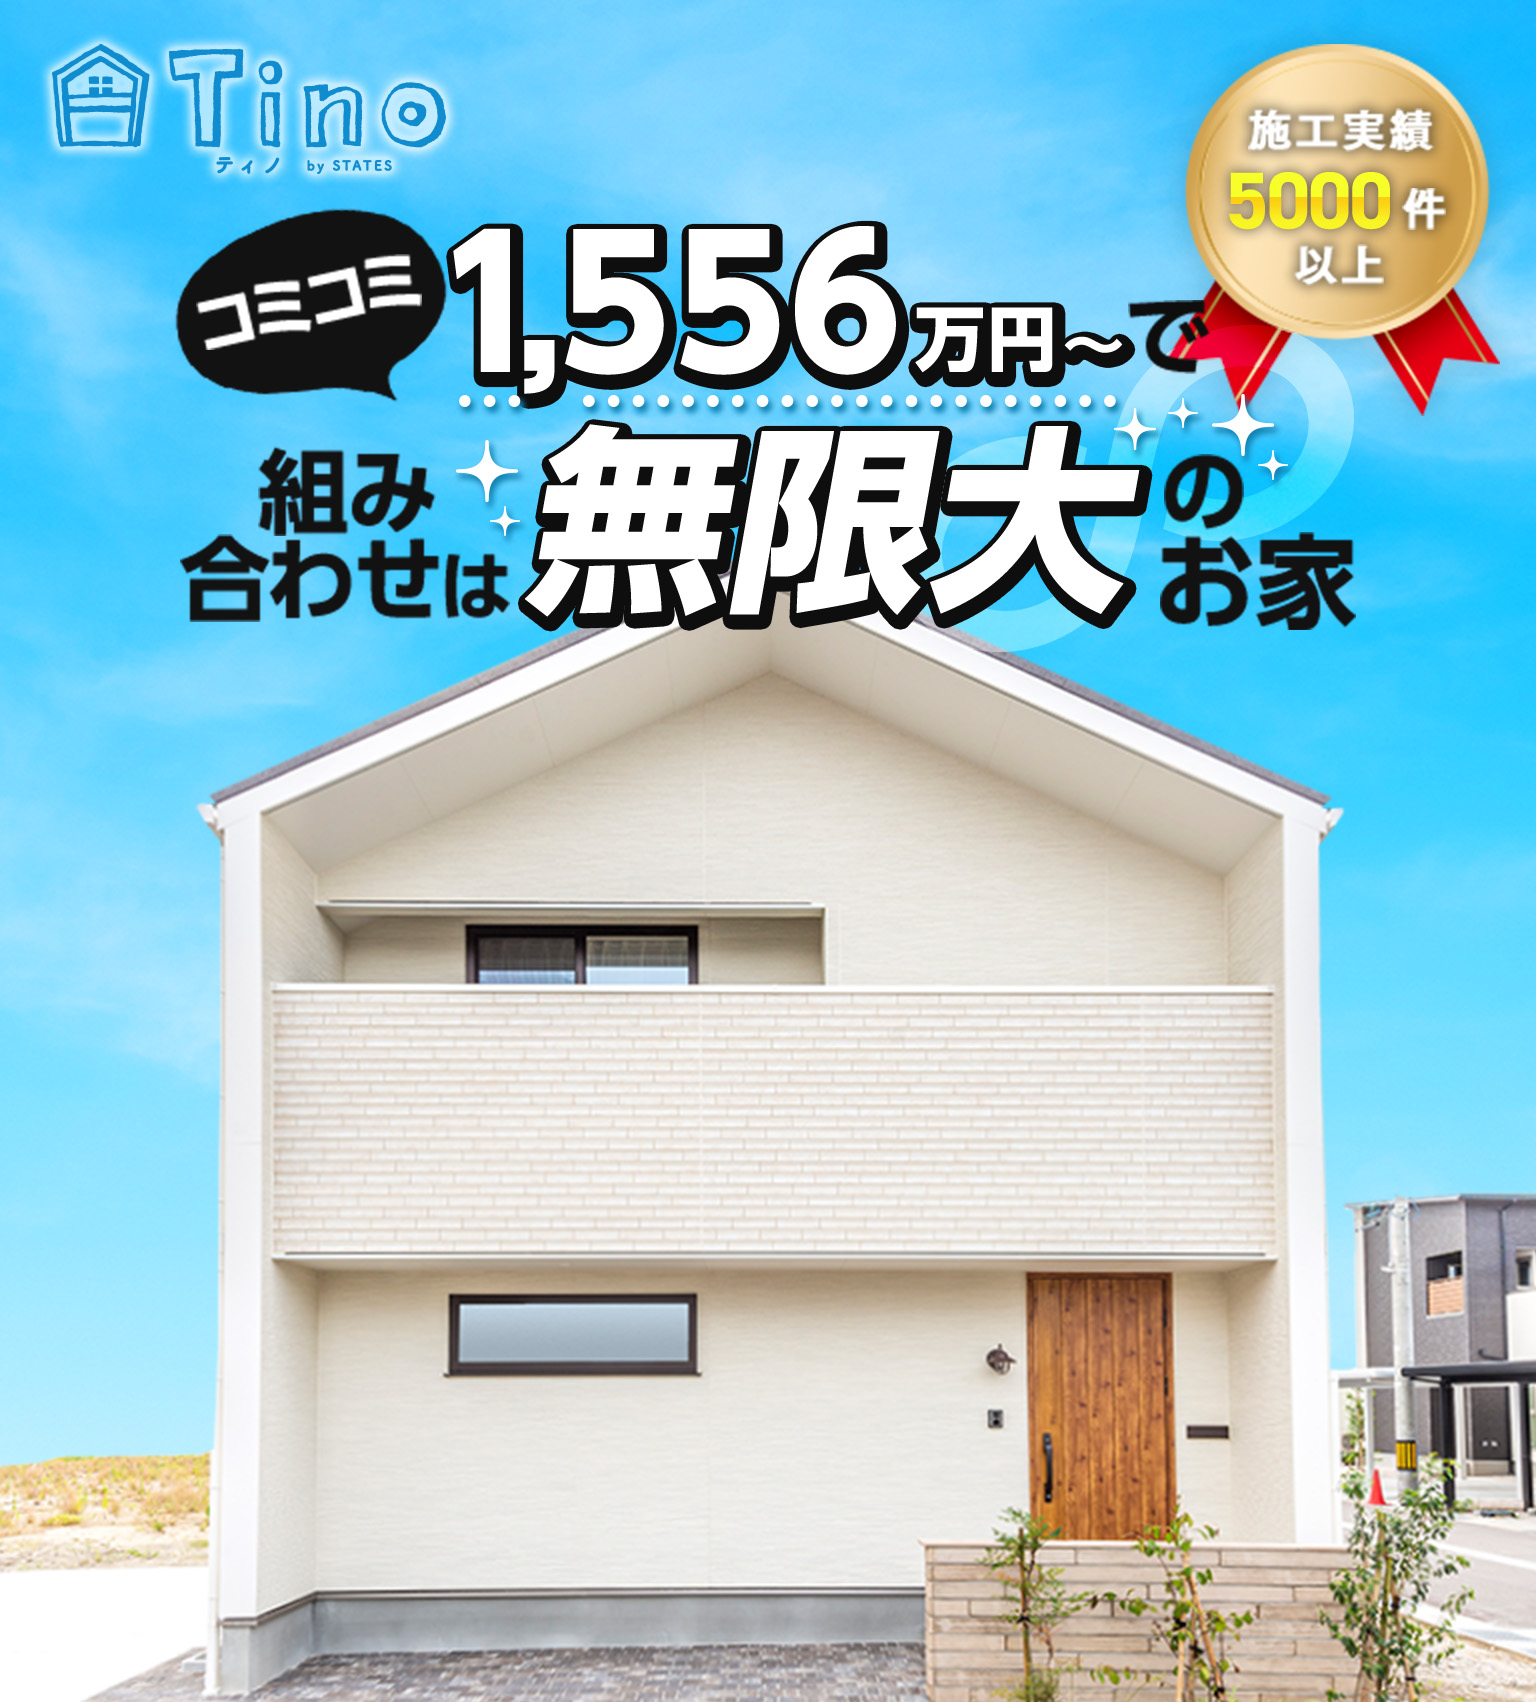 1522万円からハイクオリティな住宅Tino